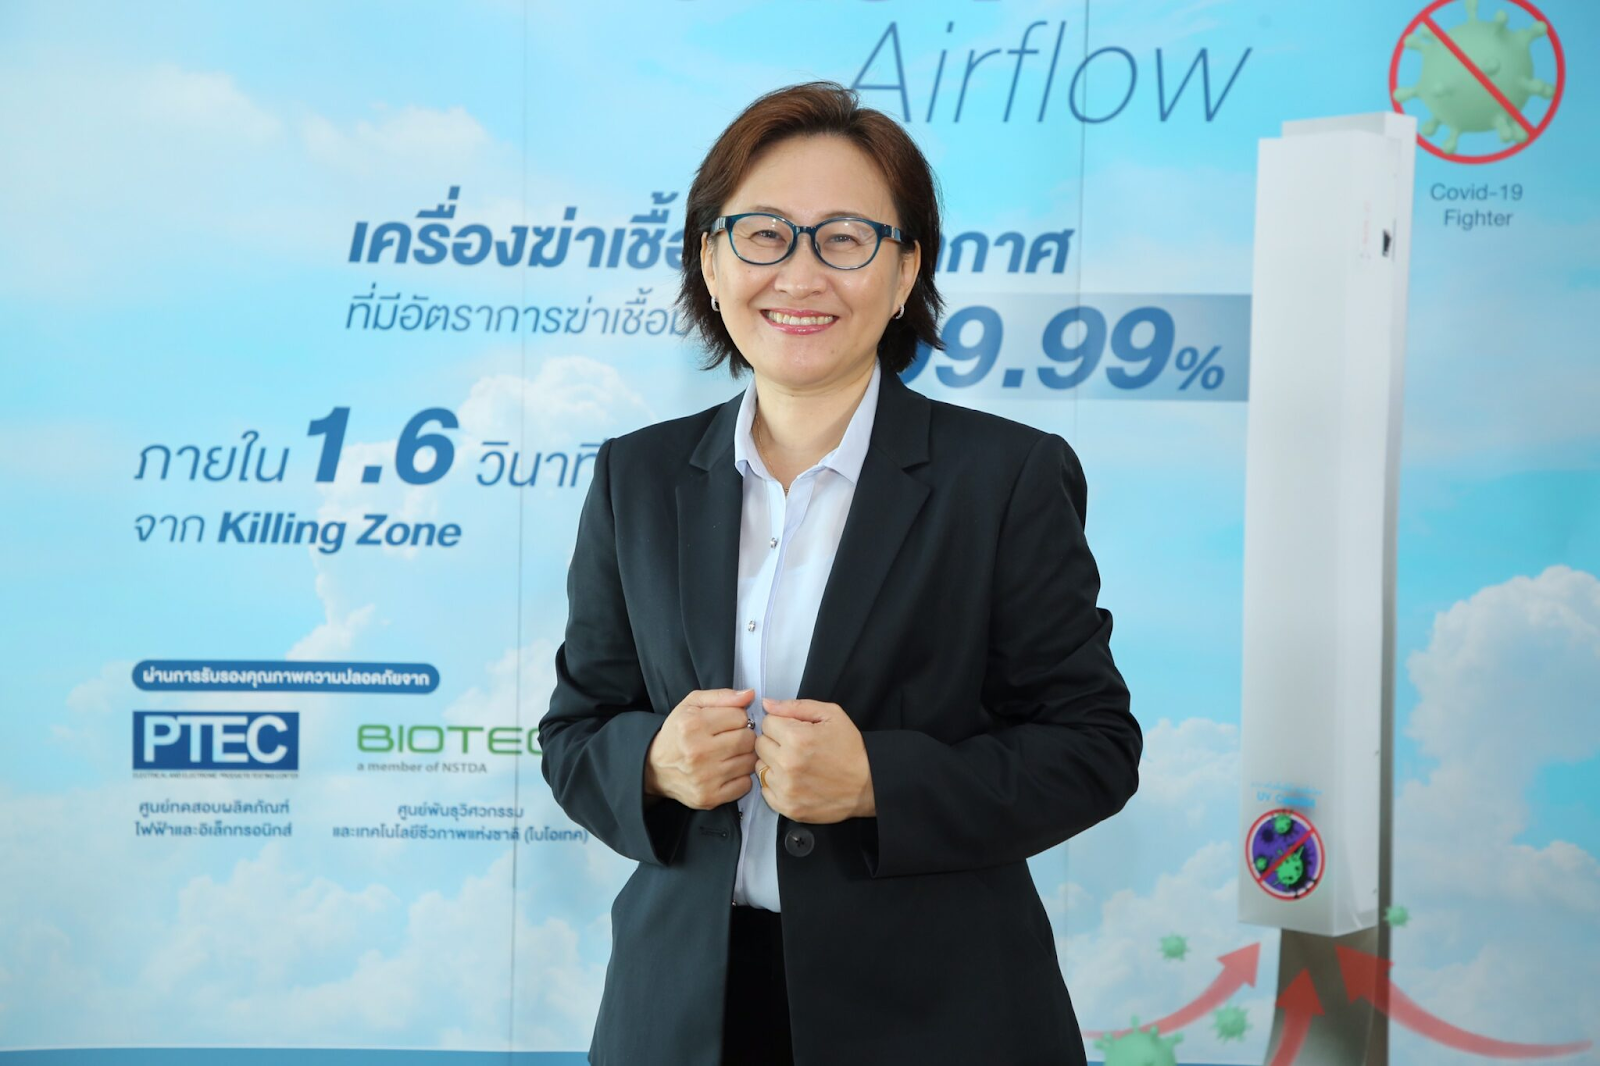 บริษัท โซลเอ็น เทค จำกัด แจ้งเกิดเครื่องฆ่าเชื้อโรคในอากาศ “UV Care254 Airflow” ภายใต้แบรนด์ โซลเอ็น ในฐานะนวัตกรรมจากนักวิทยาศาสตร์ไทย เพื่อคนไทยห่างไกลโรค ตลาดอุตสาหกรรมไทย นวัตกรรมอุตสาหกรรมไทย พัฒนาอุตสาหกรรมไทยให้ก้าวหน้า pasted image 0